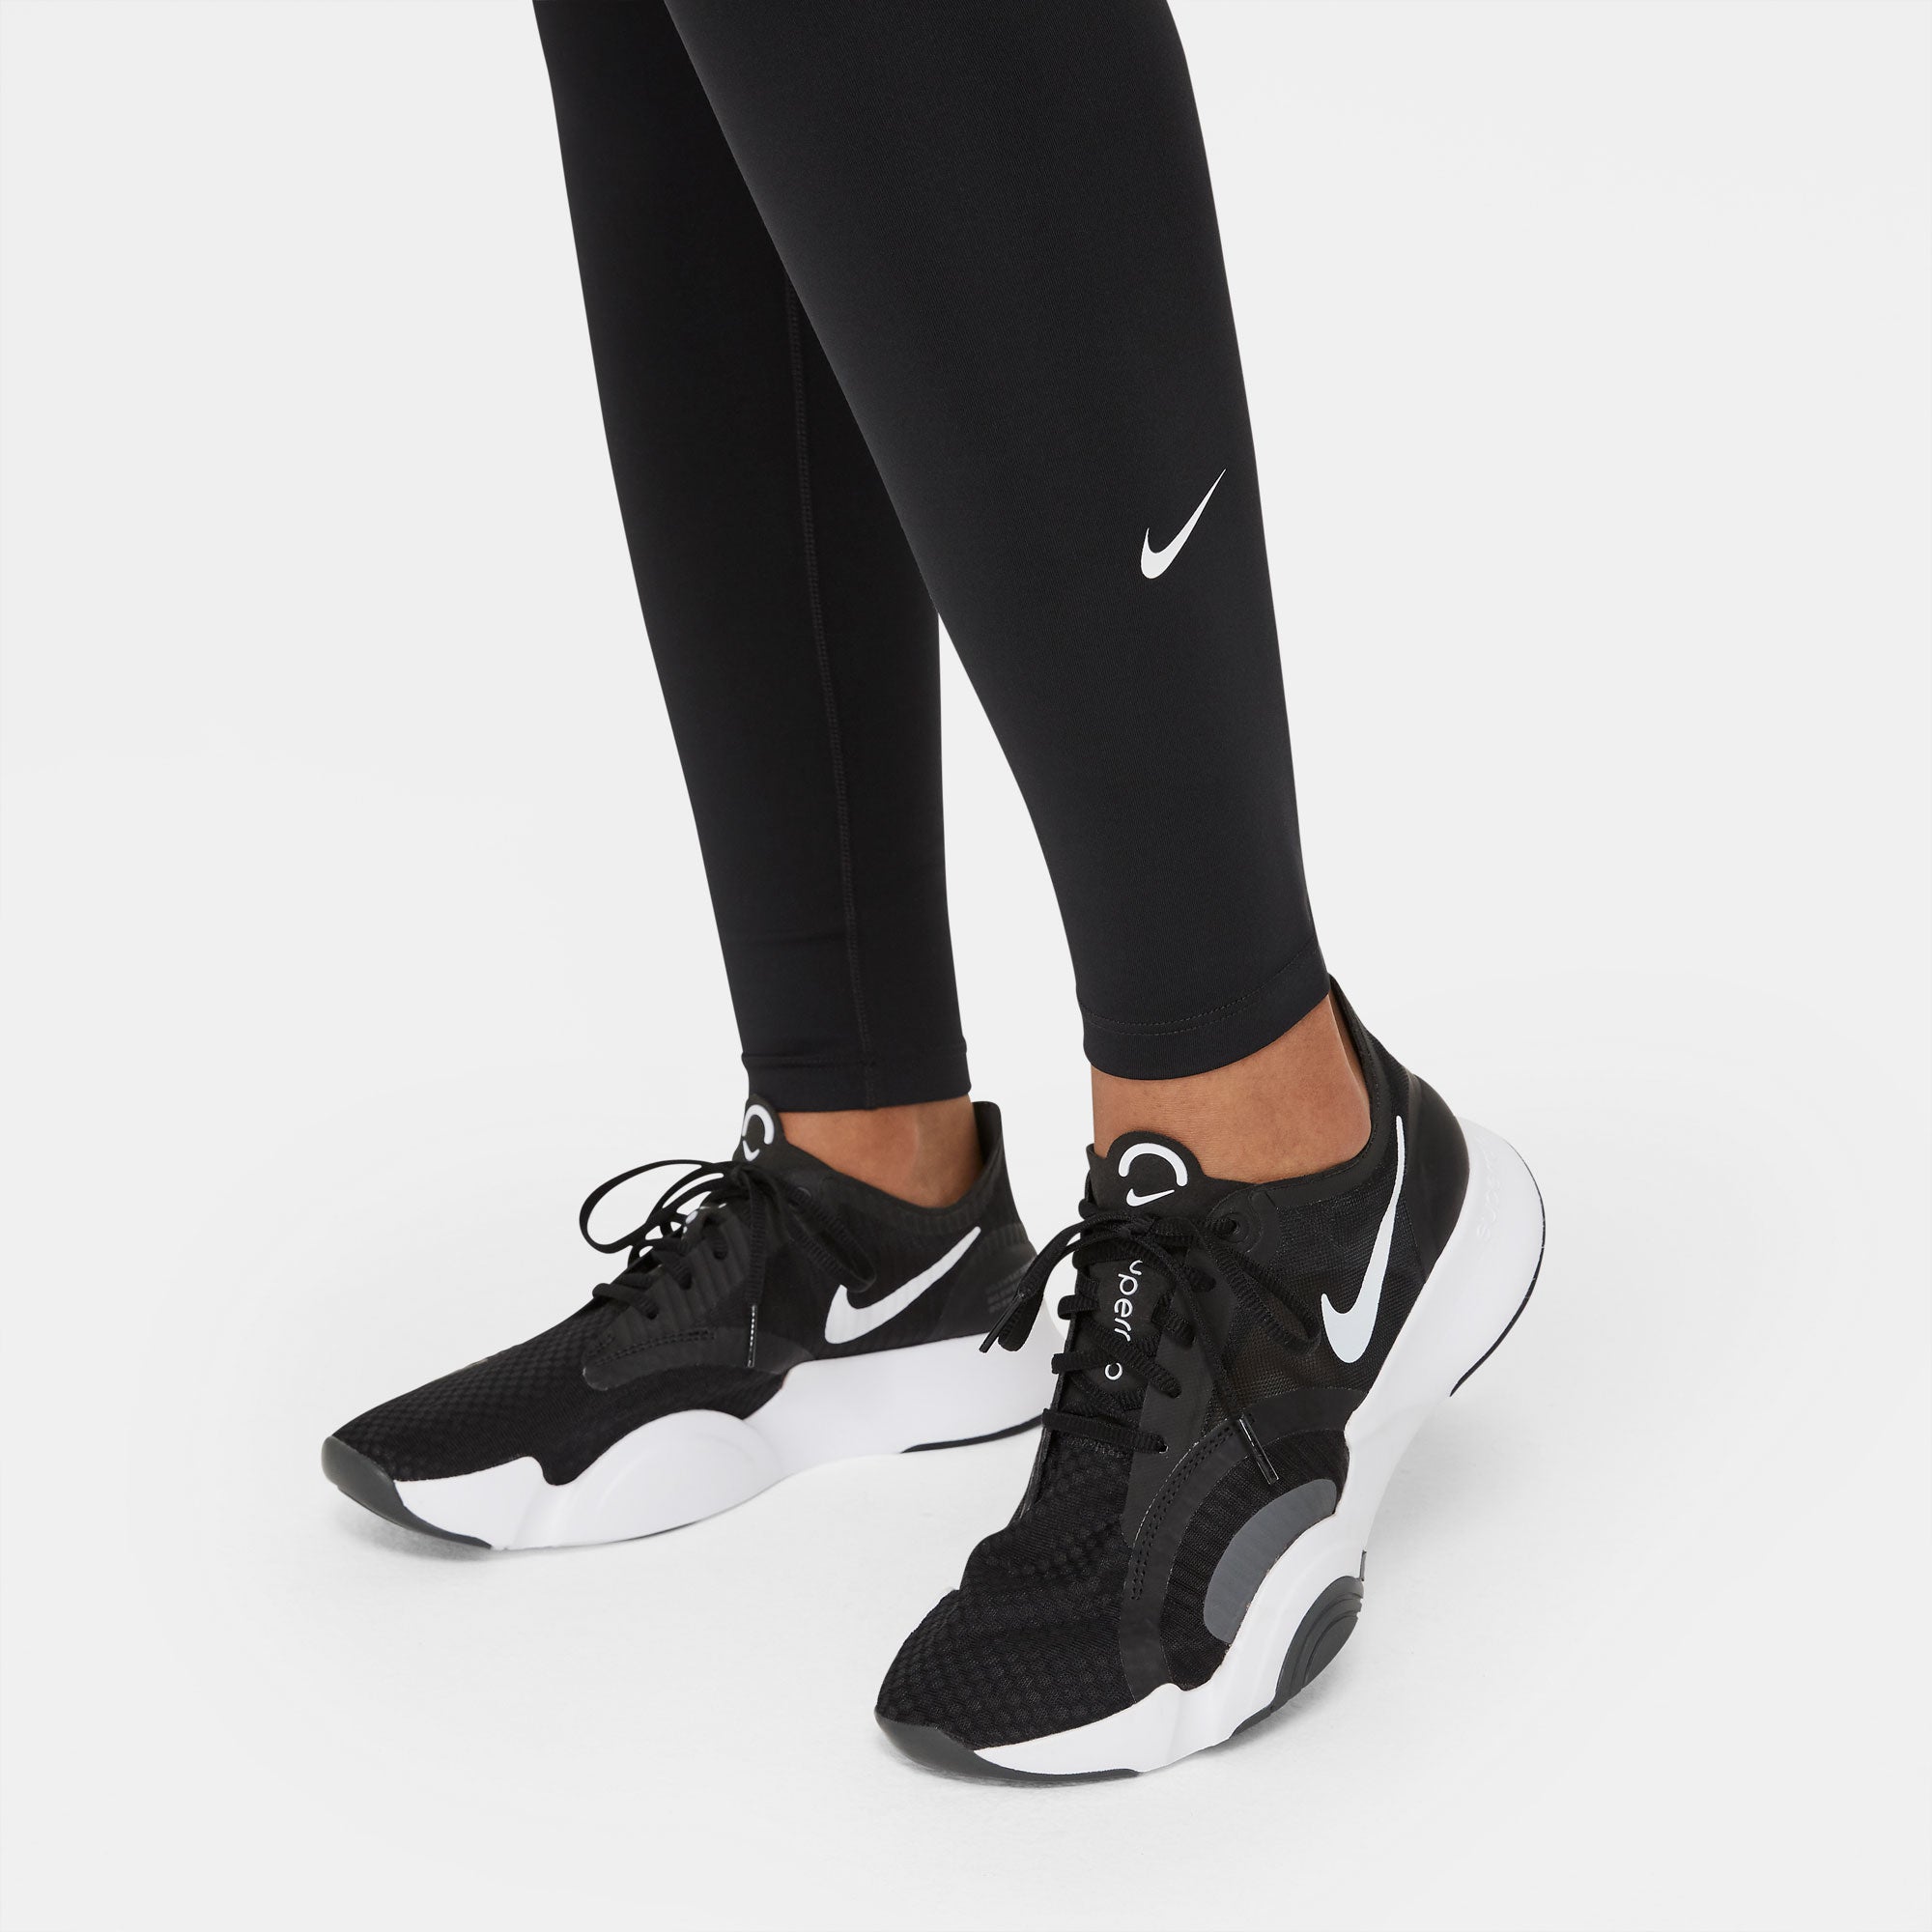 Nike One Dri-FIT Women's Mid-Rise Tights Black (5)Nike One Dri-FIT Women's Mid-Rise Leggings Black (5)